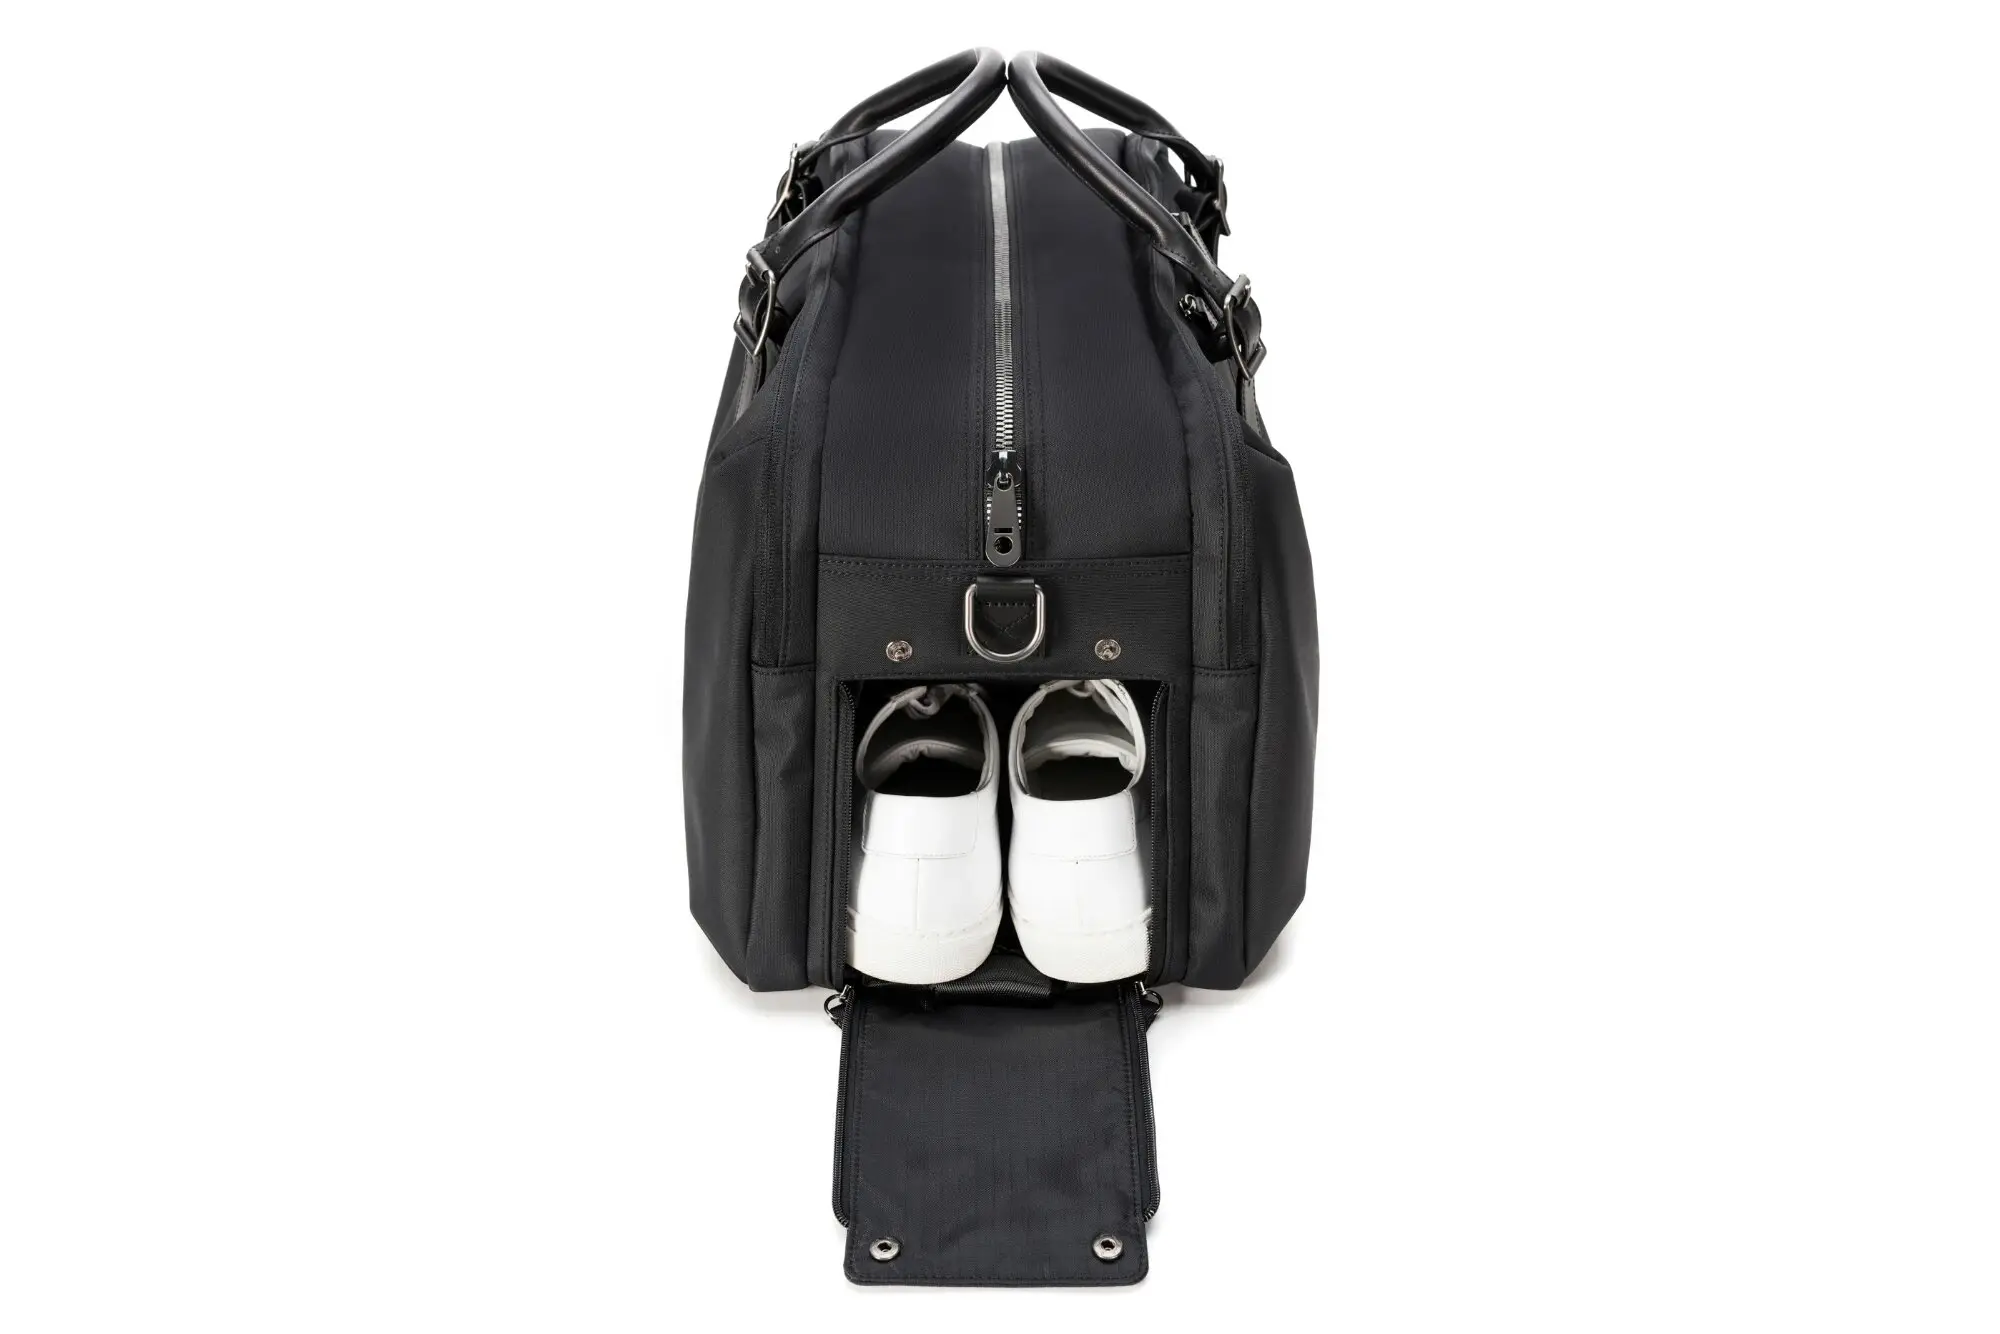 Regimen Gym Bag with Shoe Compartment